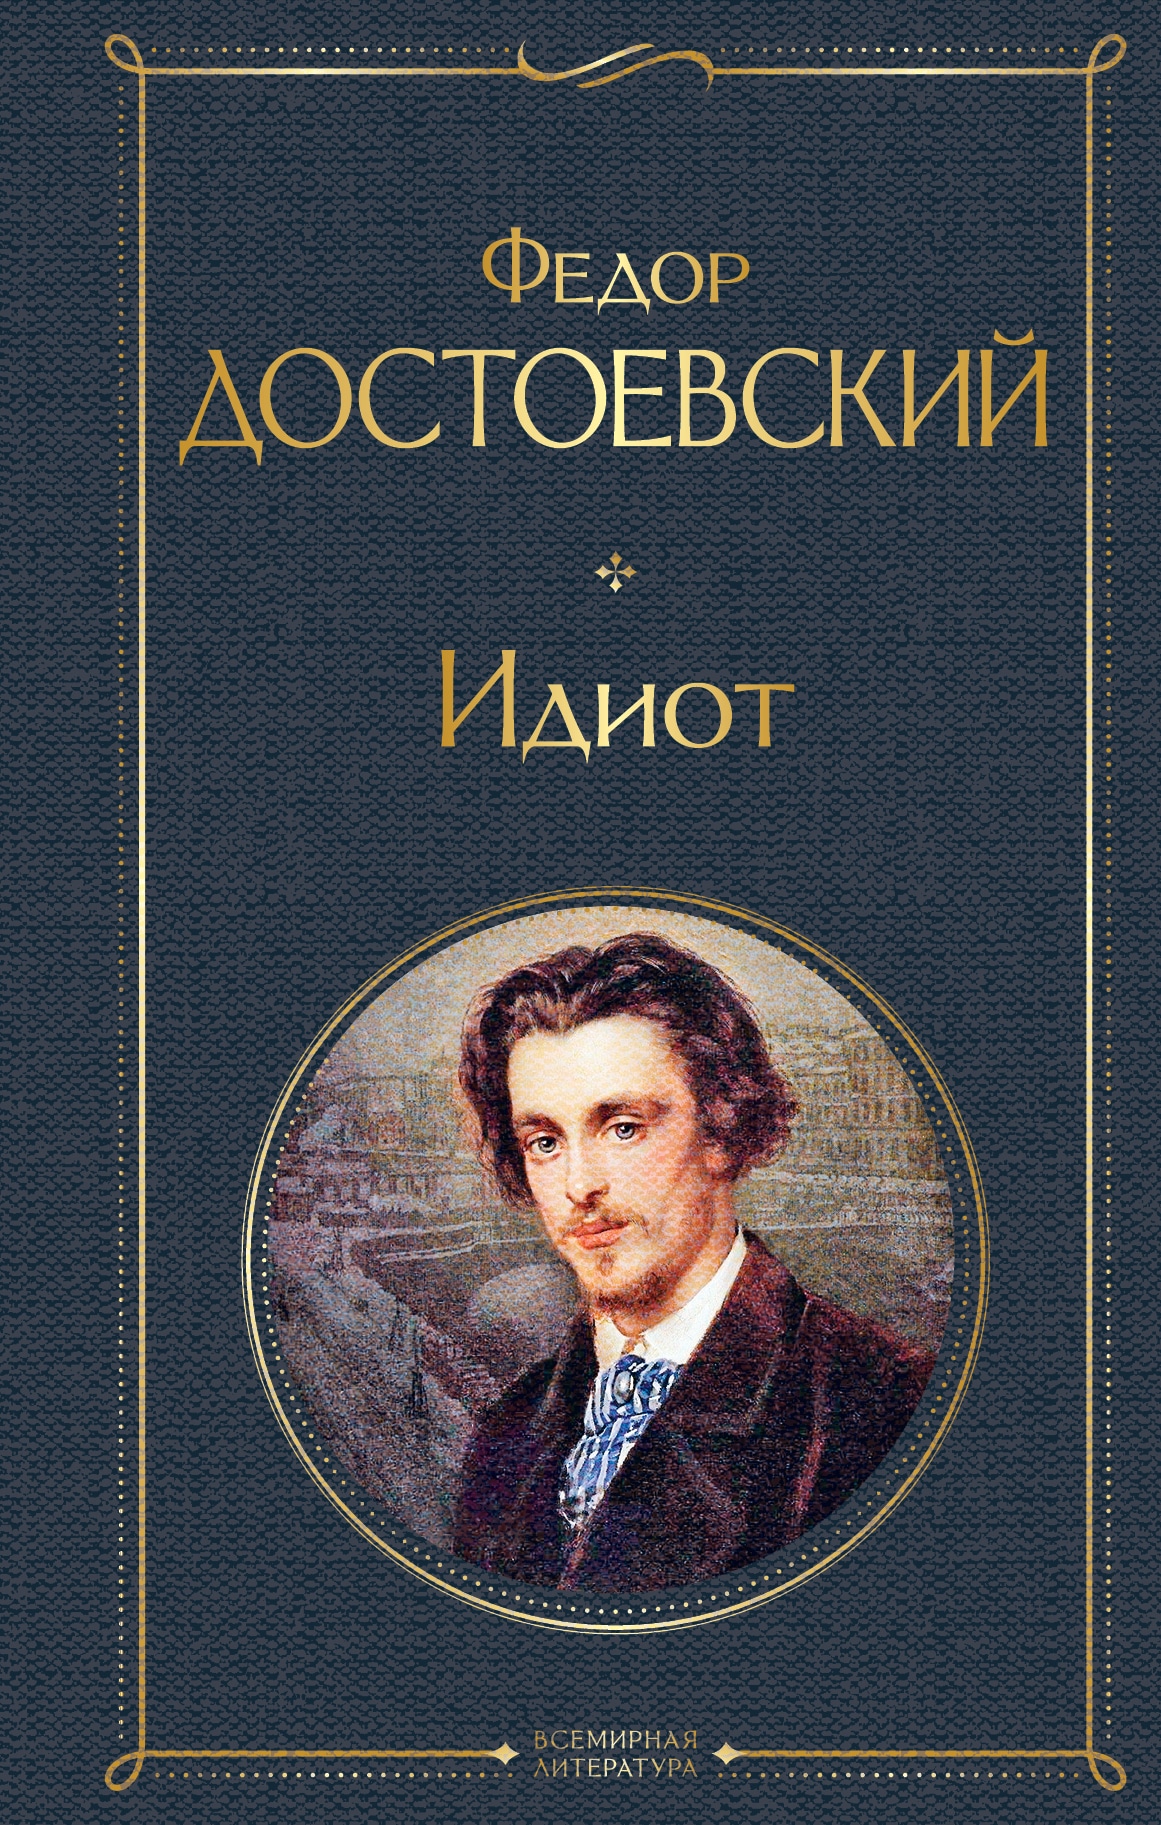 Книга «Идиот» Федор Достоевский — 27 августа 2021 г.